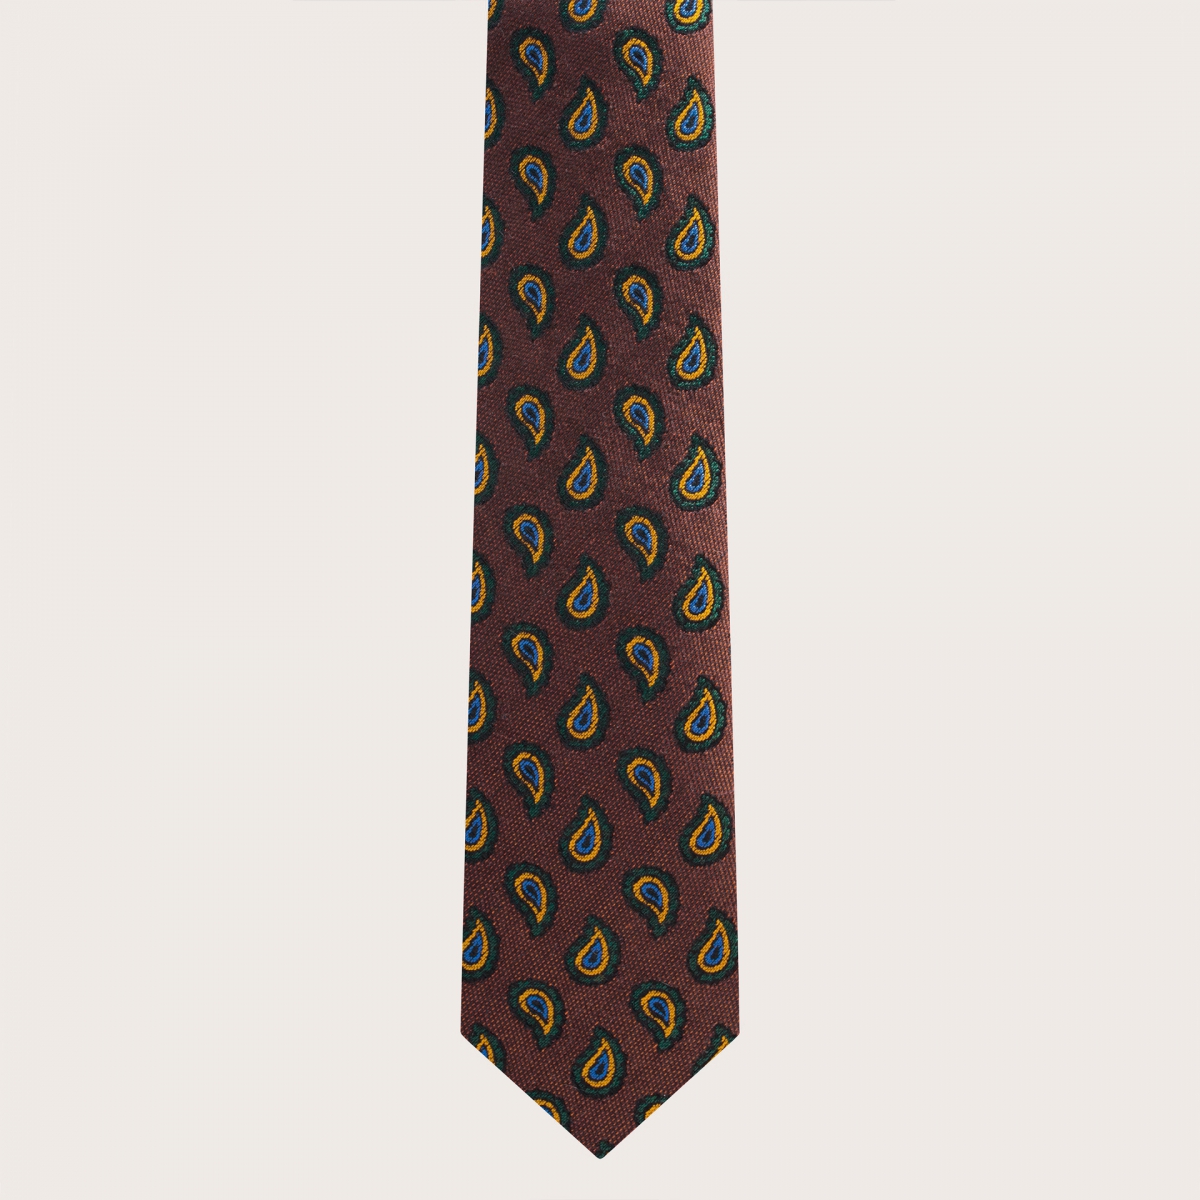 BRUCLE Set di bretelle e cravatta in seta con motivo paisley arancio e marrone